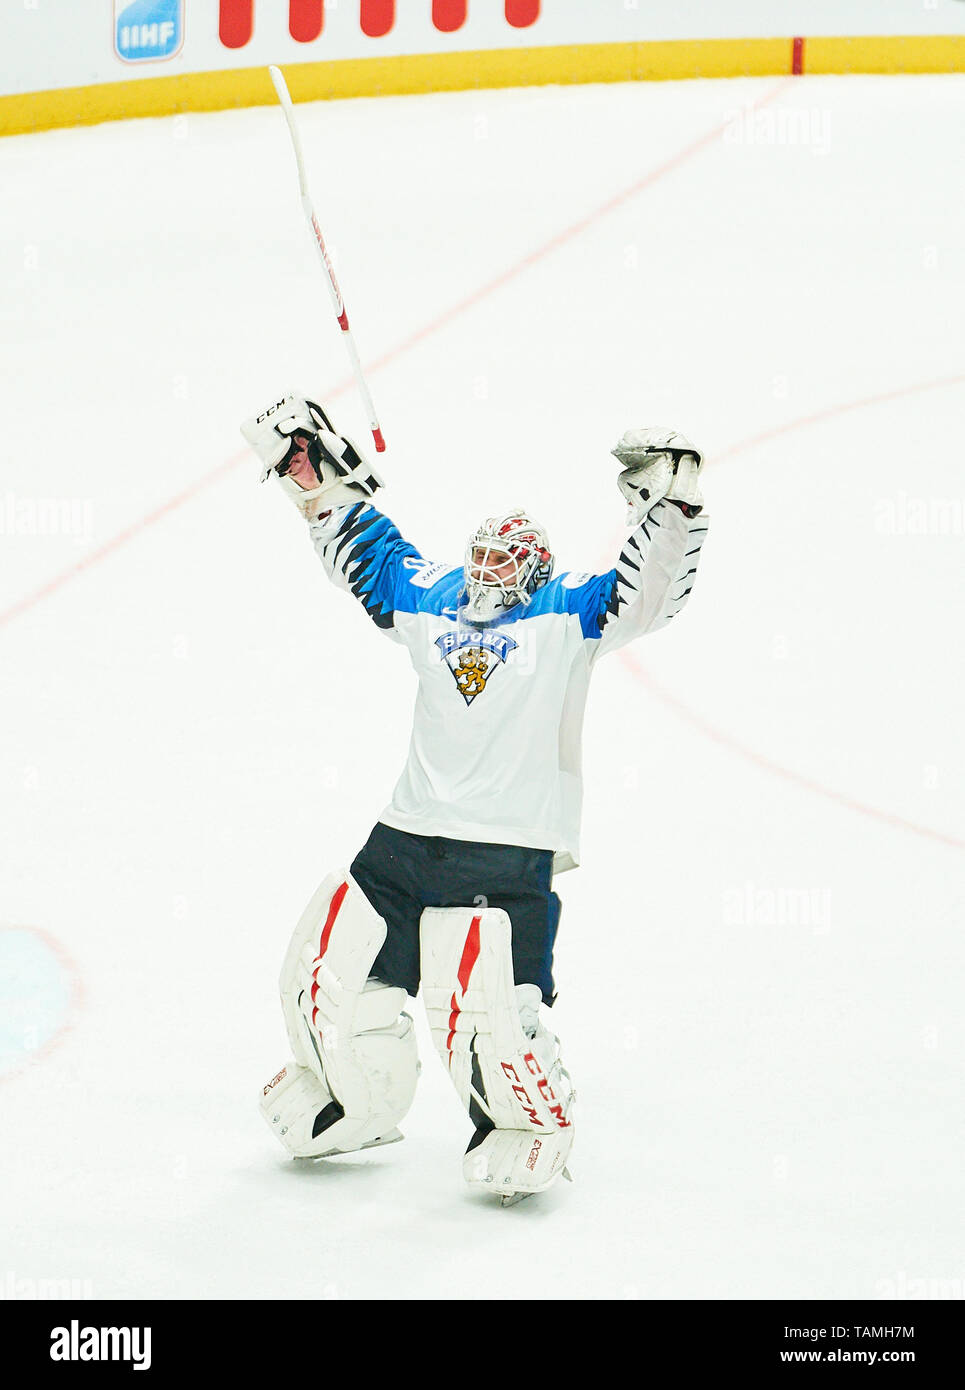 Bratislava, Slovacchia. 26 Maggio, 2019. La Finlandia ha vinto il titolo e celebrare: Kevin LANKINEN, aletta 30 Tifo, gioia, emozioni, celebrando, ridere, tifo, rallegratevi, sistemando i bracci, stringendo il pugno, celebrare, celebrazione Torjubel, CANADA - FINLANDIA 1-3 Kanada - Finnland FINAL IIHF Hockey su ghiaccio ai campionati mondiali di Bratislava, Slovacchia, Slowakei, 26 maggio 2019, STAGIONE 2018/2019, Credito: Peter Schatz/Alamy Live News Foto Stock